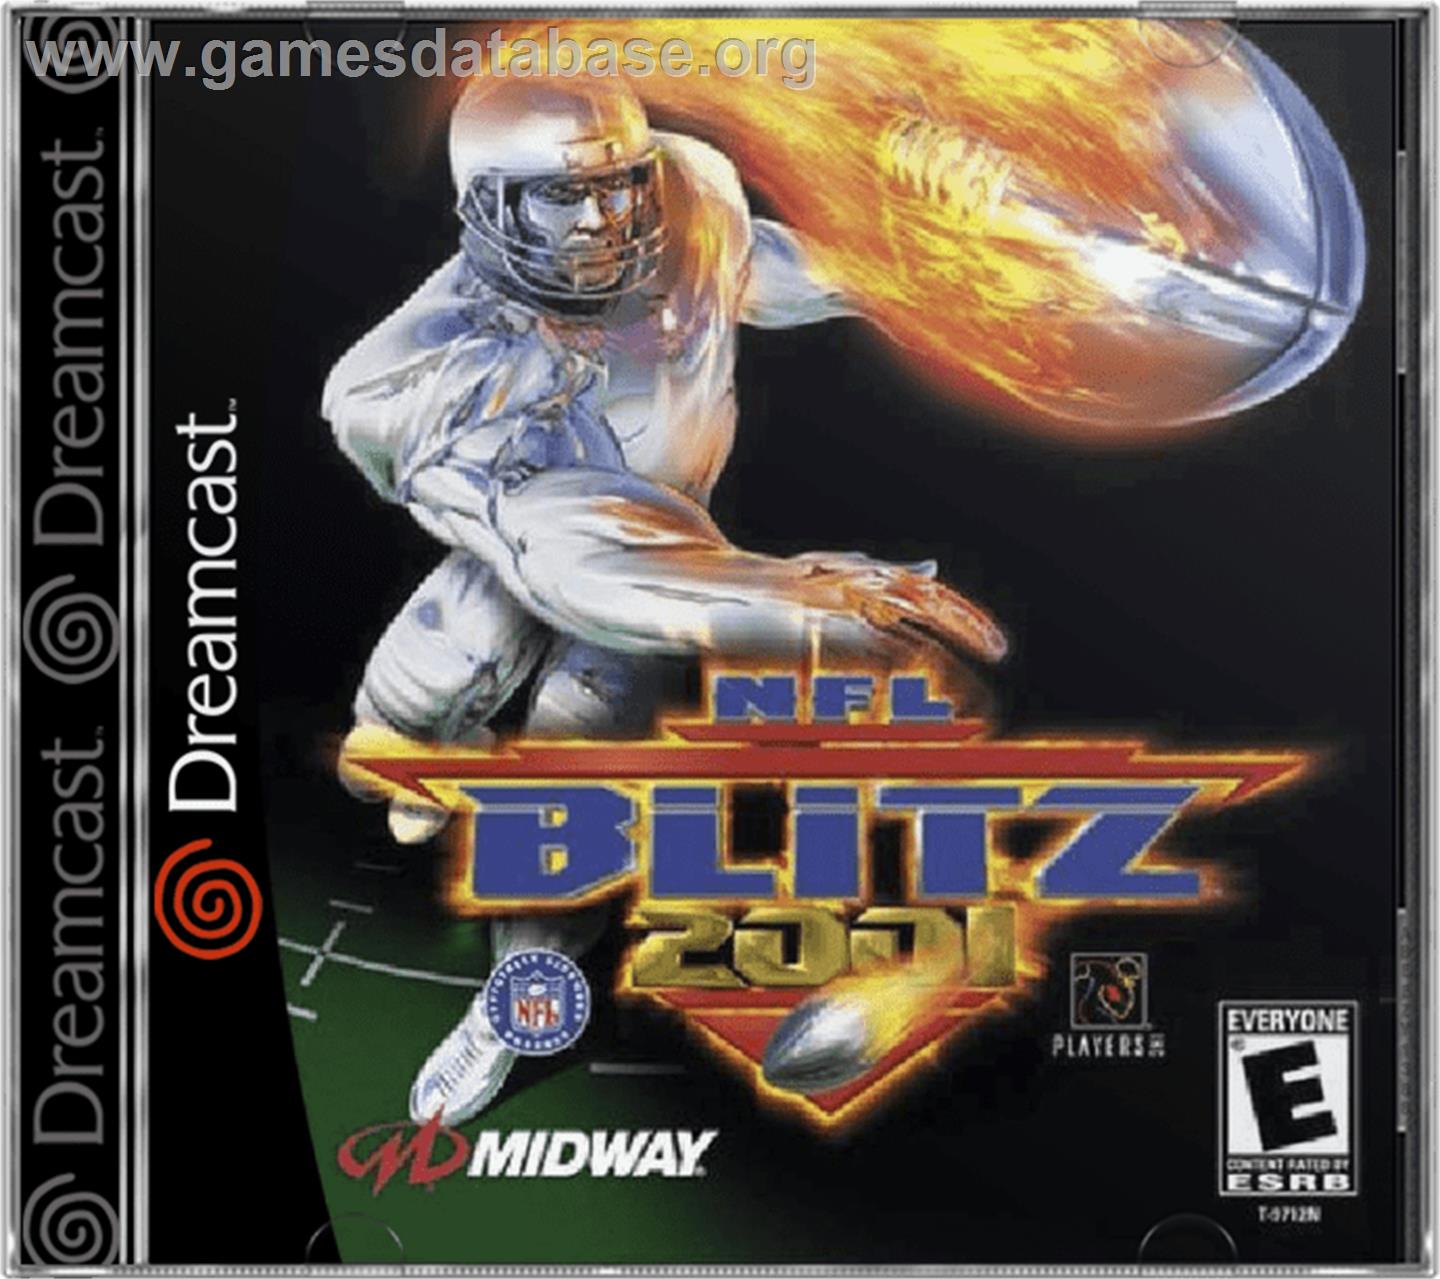 NFL Blitz 2001 - Sega Dreamcast - Artwork - Box